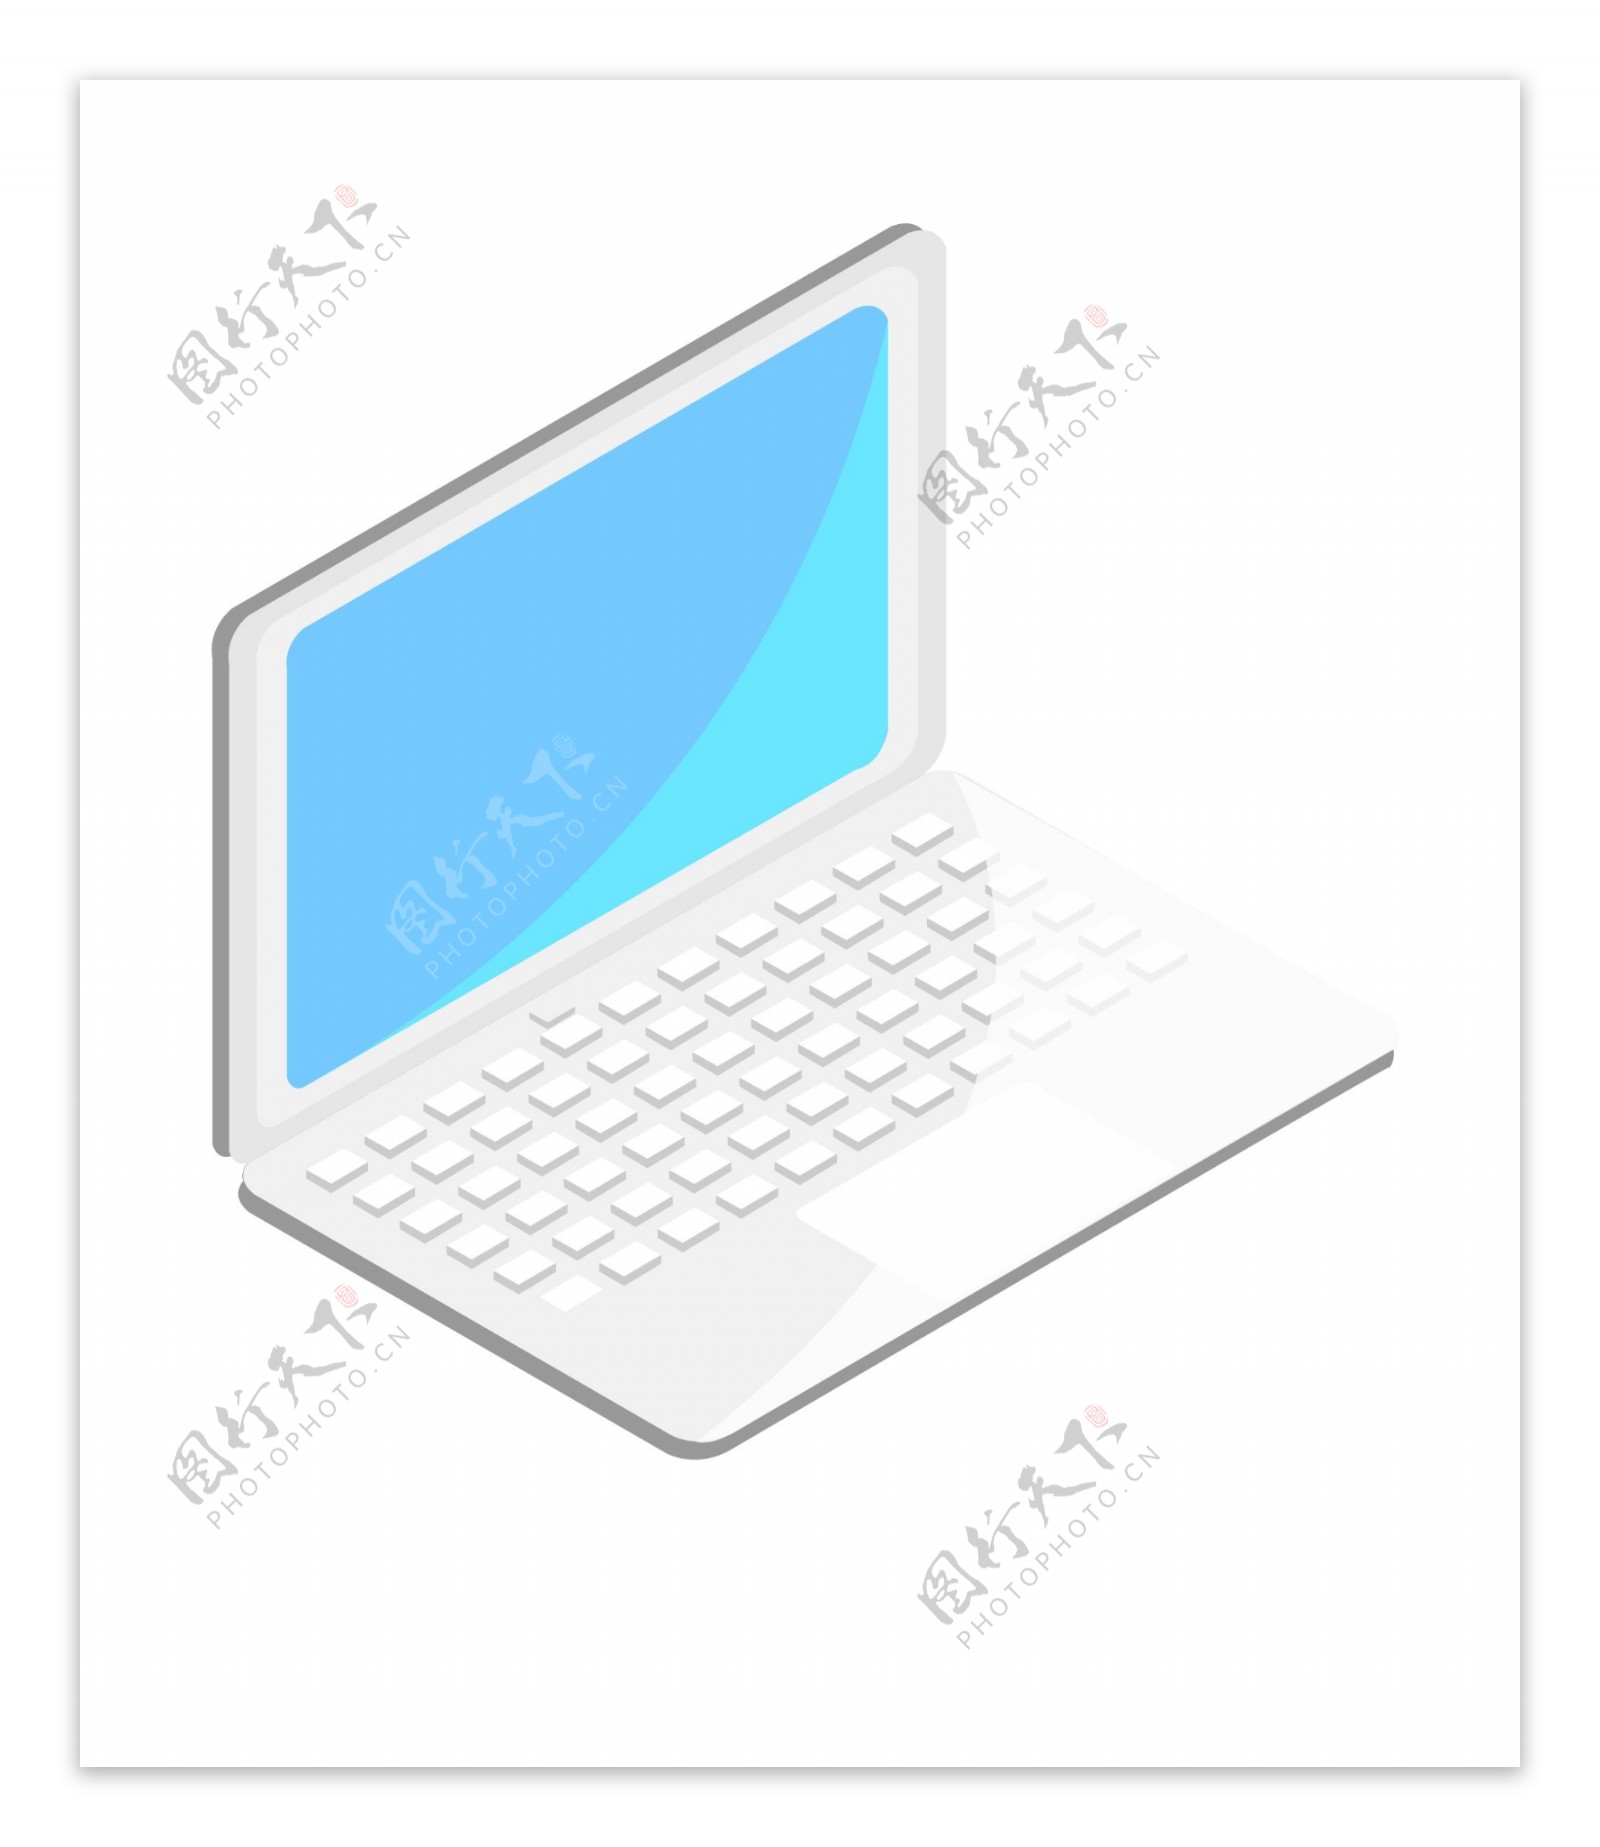 白色的电脑装饰插画